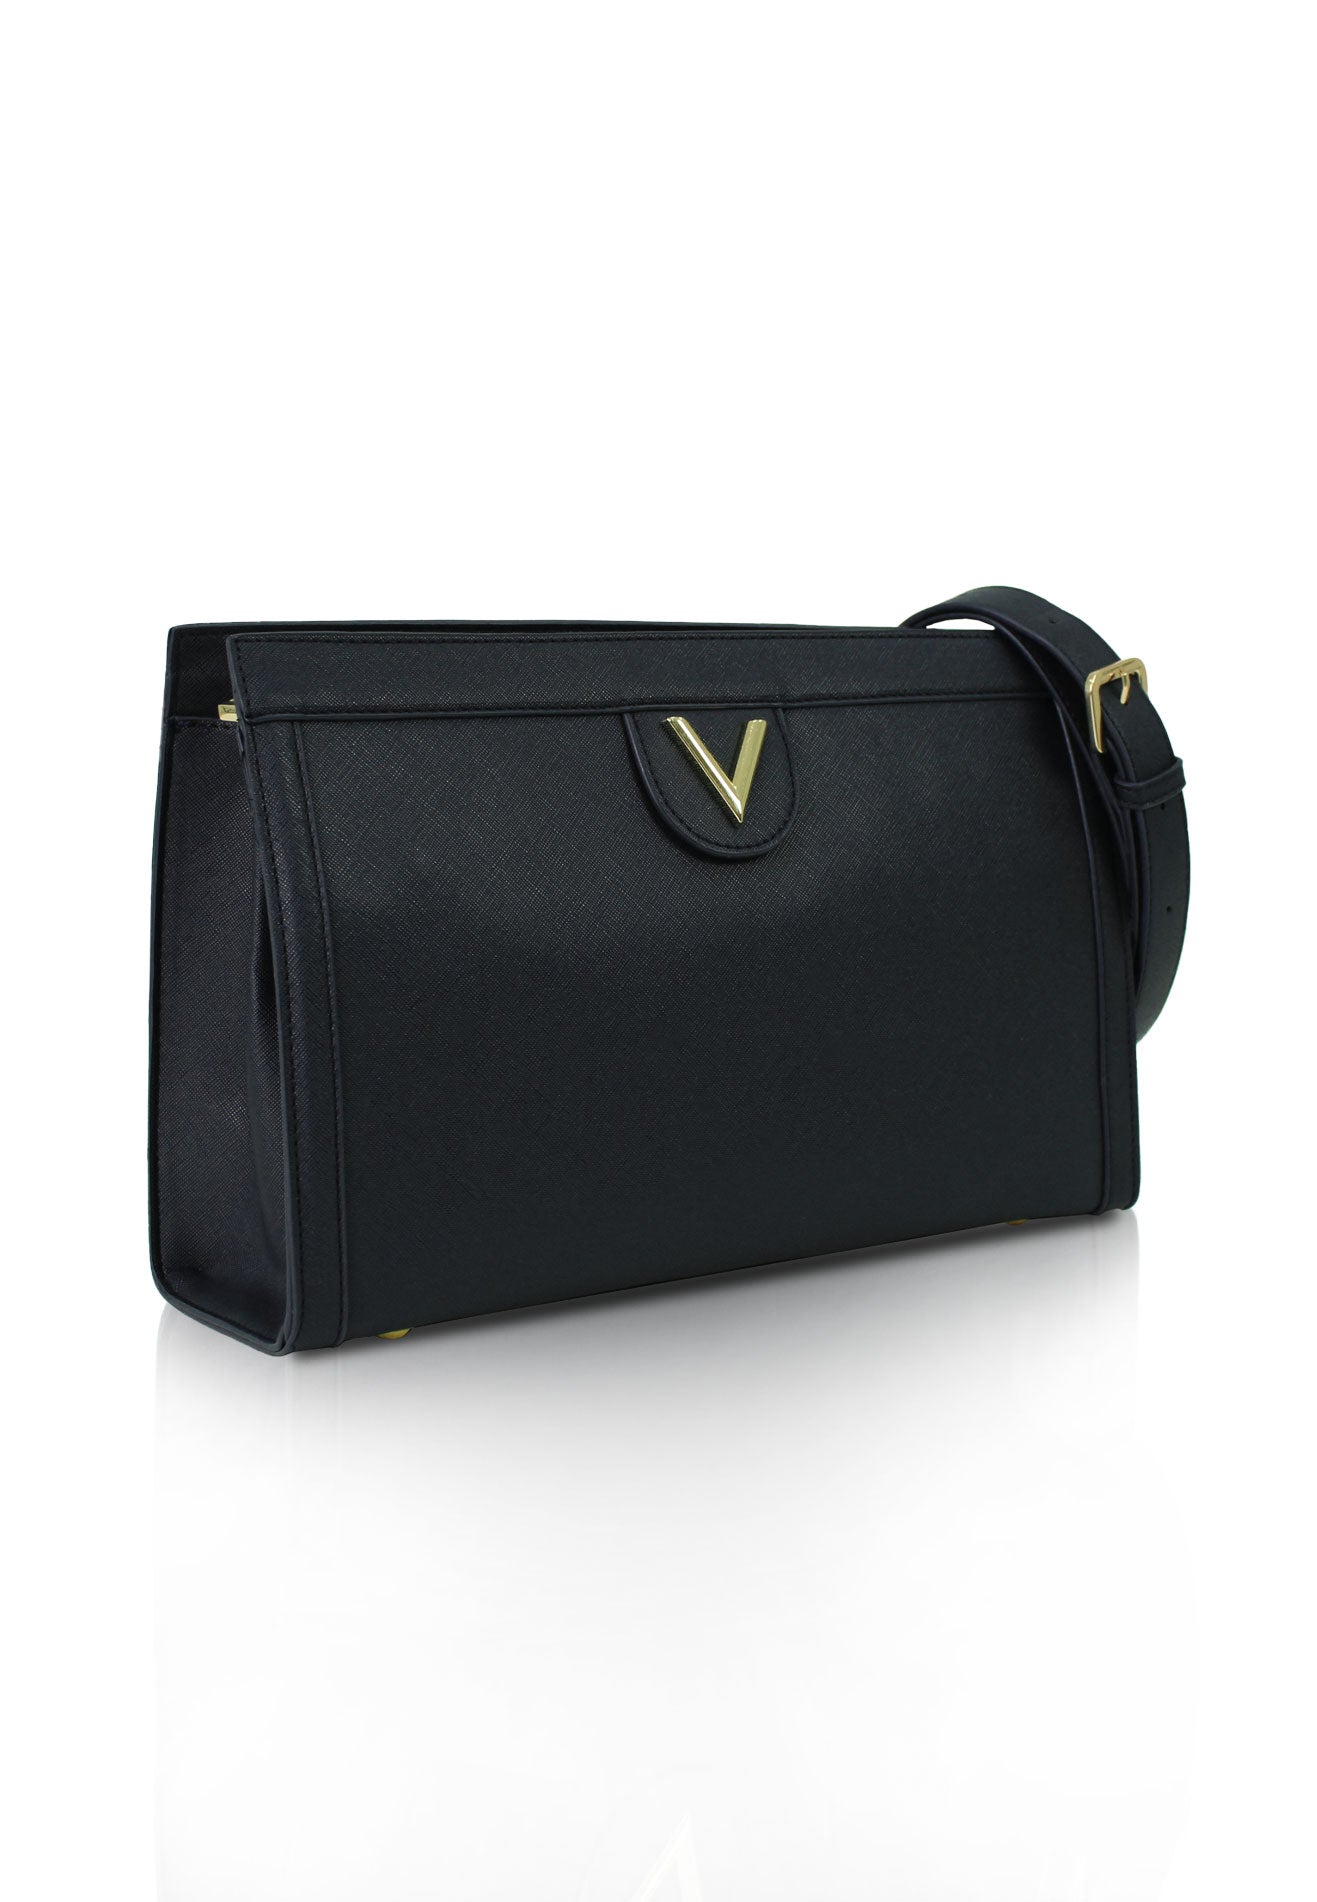 VOIR Iconic 'V' Mid-Size Shoulder Bag